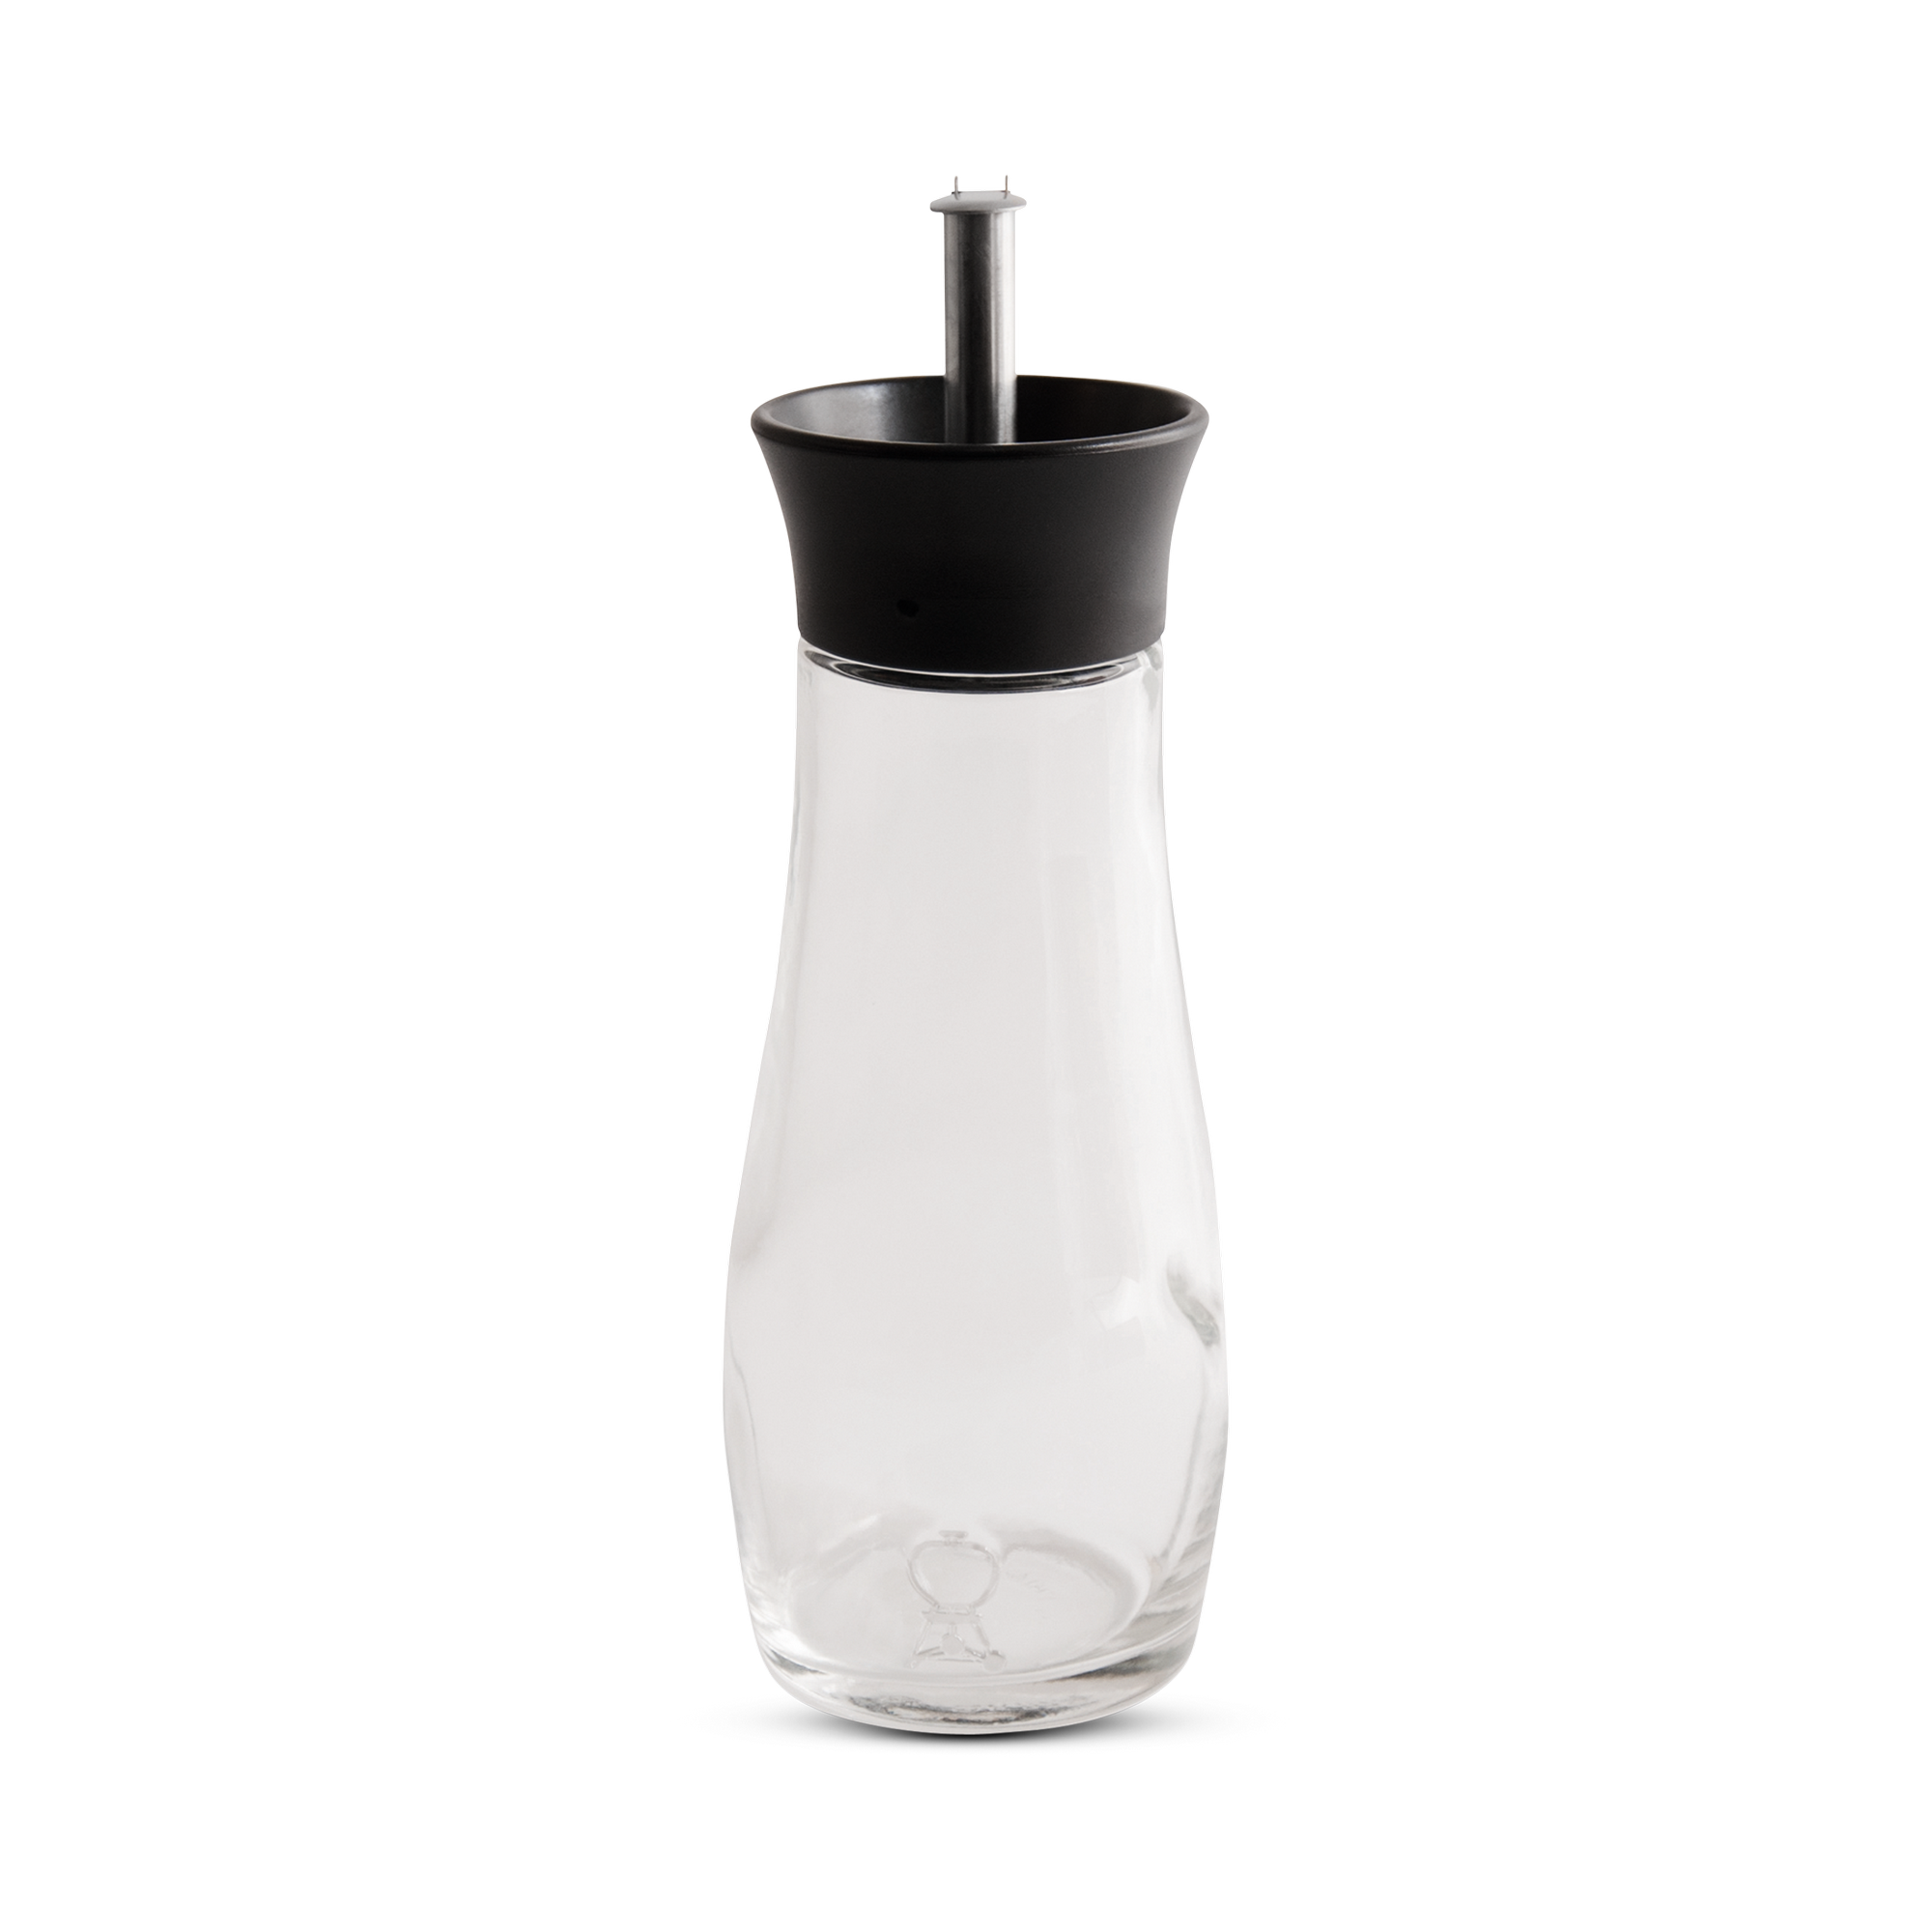 Öl- und Essigflasche Glas, Edelstahl-Ausgiesser + product picture